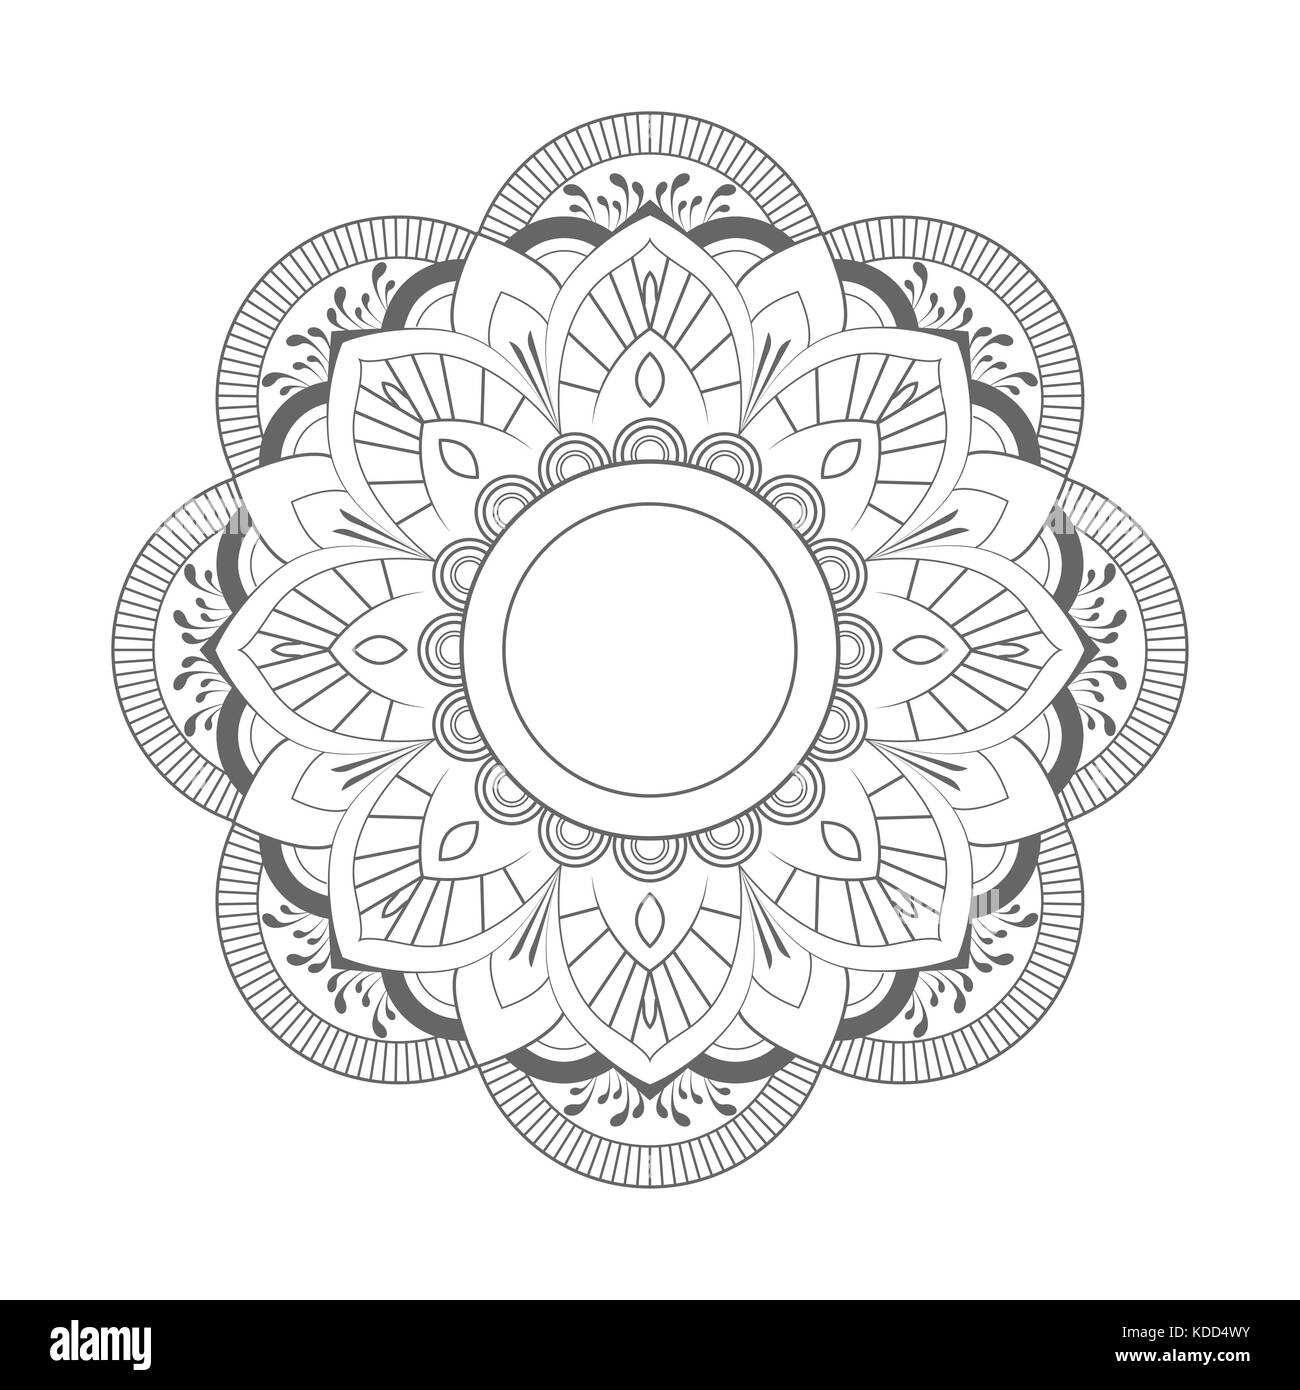 Circle Mandala Vector on white background Stock Photo